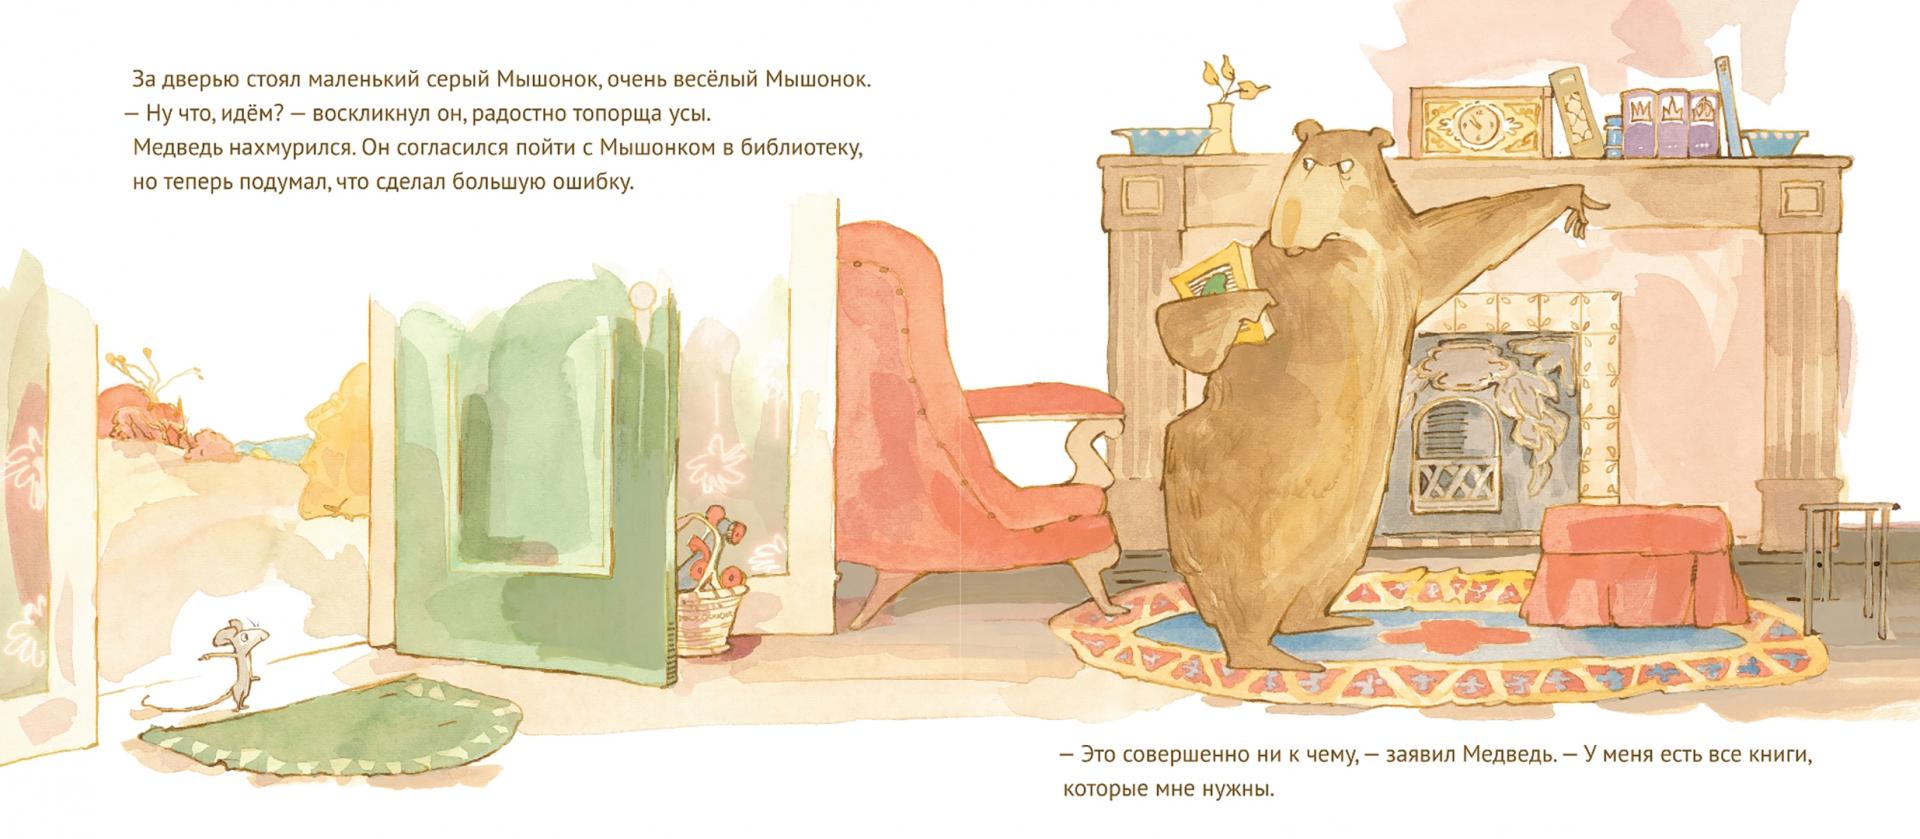 Иллюстрация 1 из 32 для Медведь в библиотеке - Бонни Беккер | Лабиринт - книги. Источник: Лабиринт